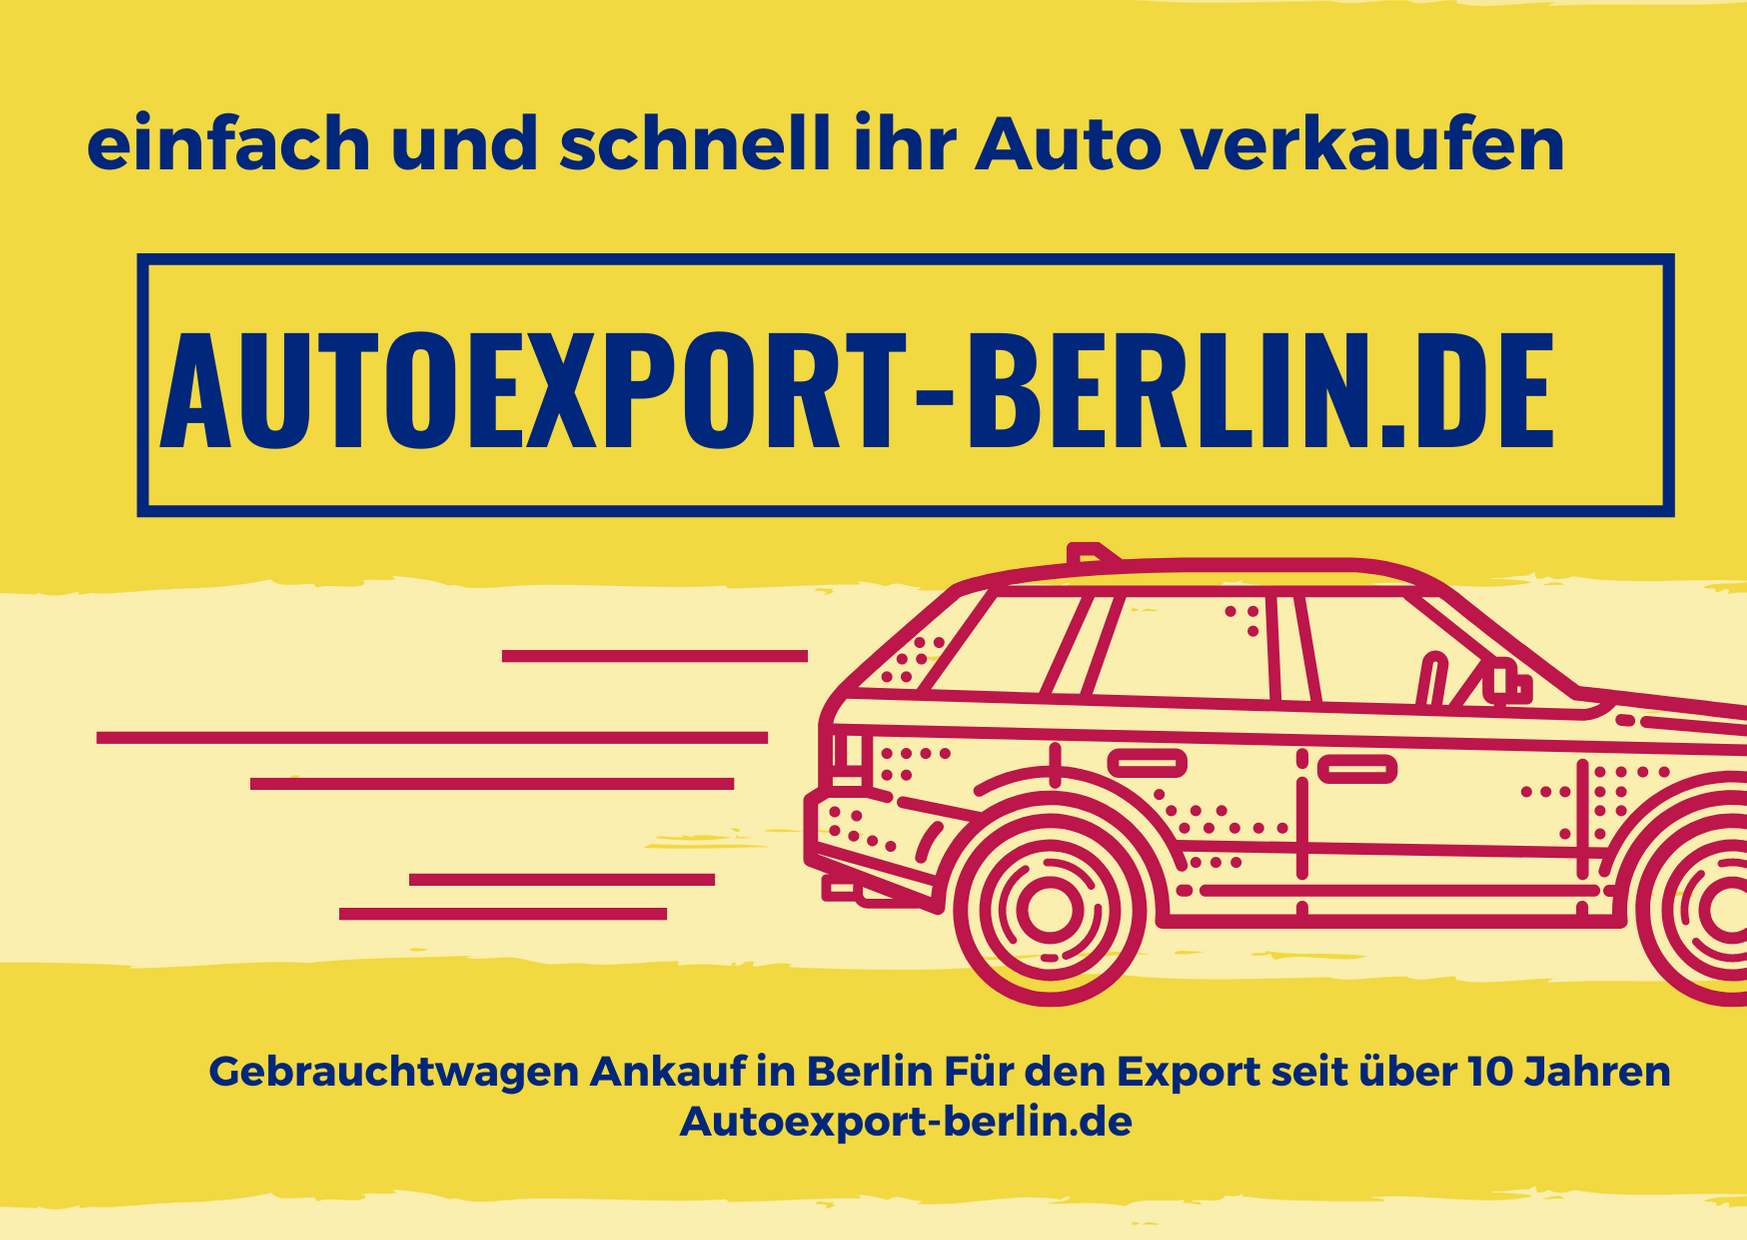 AUTOEXPORT-BERLIN.DE